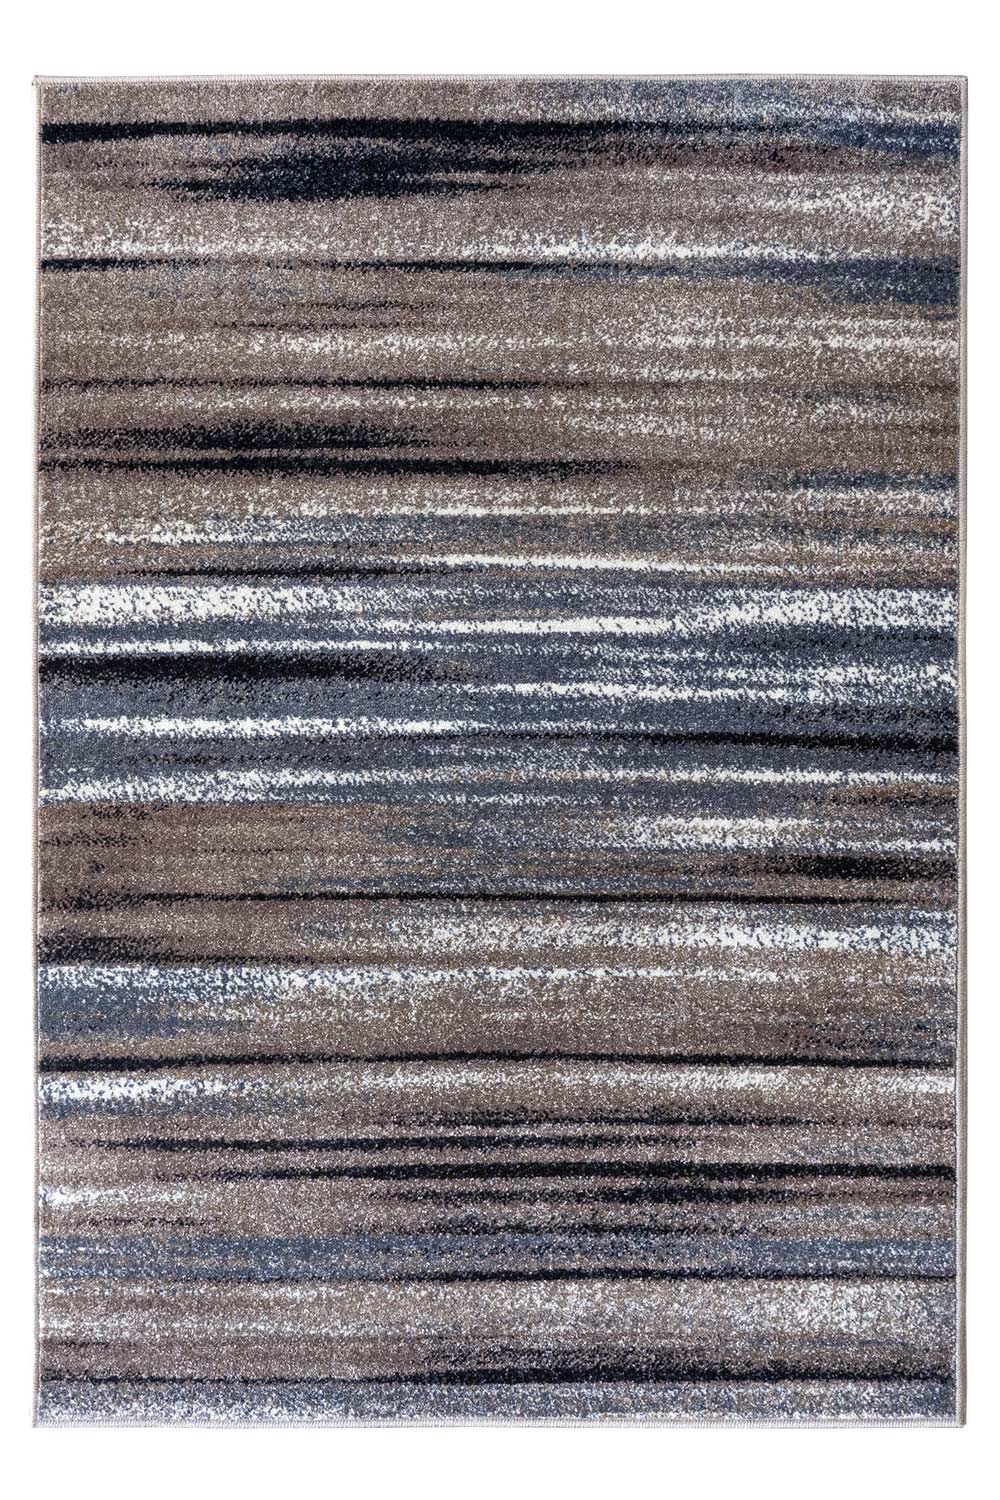 Kusový koberec RAVE 24046/163 60x110 cm